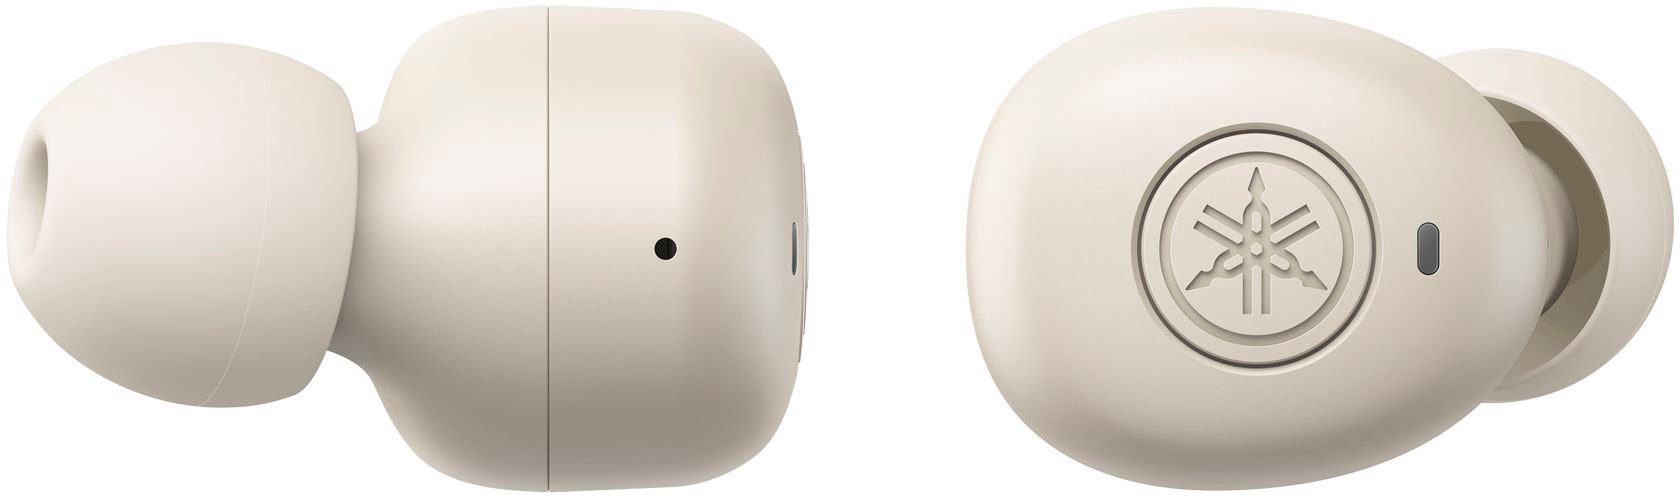 Ohrstöpseln unterschiedlich In-Ear-Kopfhörer vier (Google werden TW-E3B großen mit Sie zusätzlich Yamaha Assistant, wireless geliefert Siri),